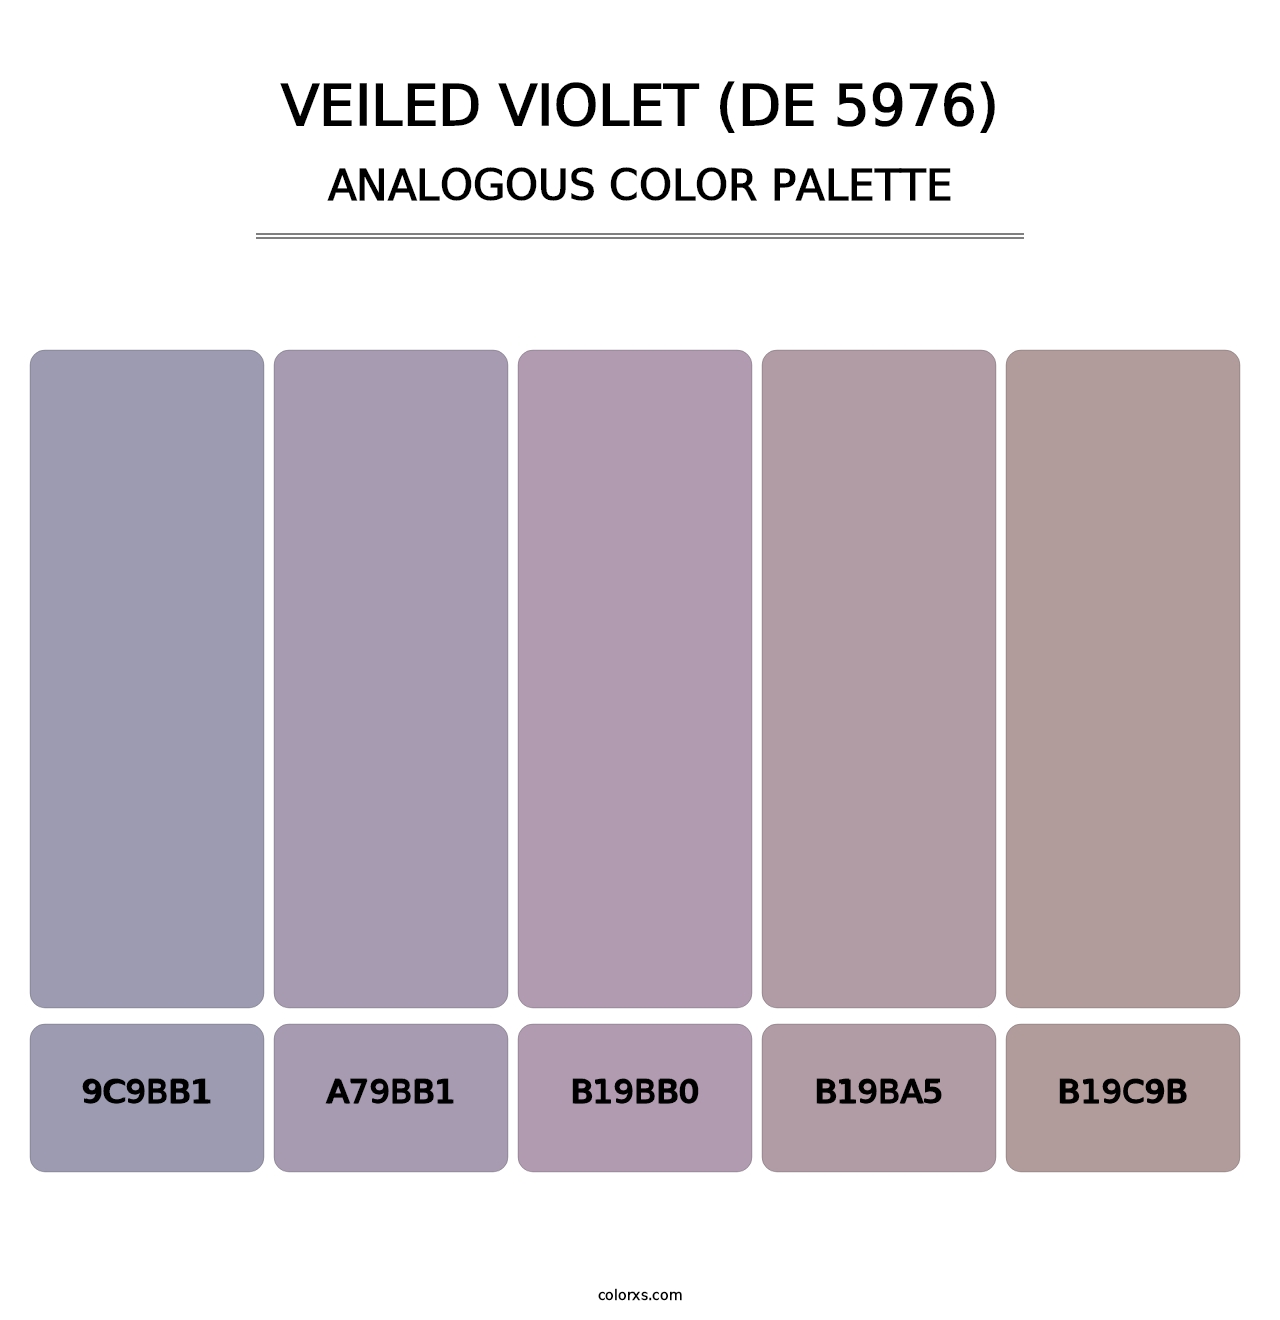 Veiled Violet (DE 5976) - Analogous Color Palette